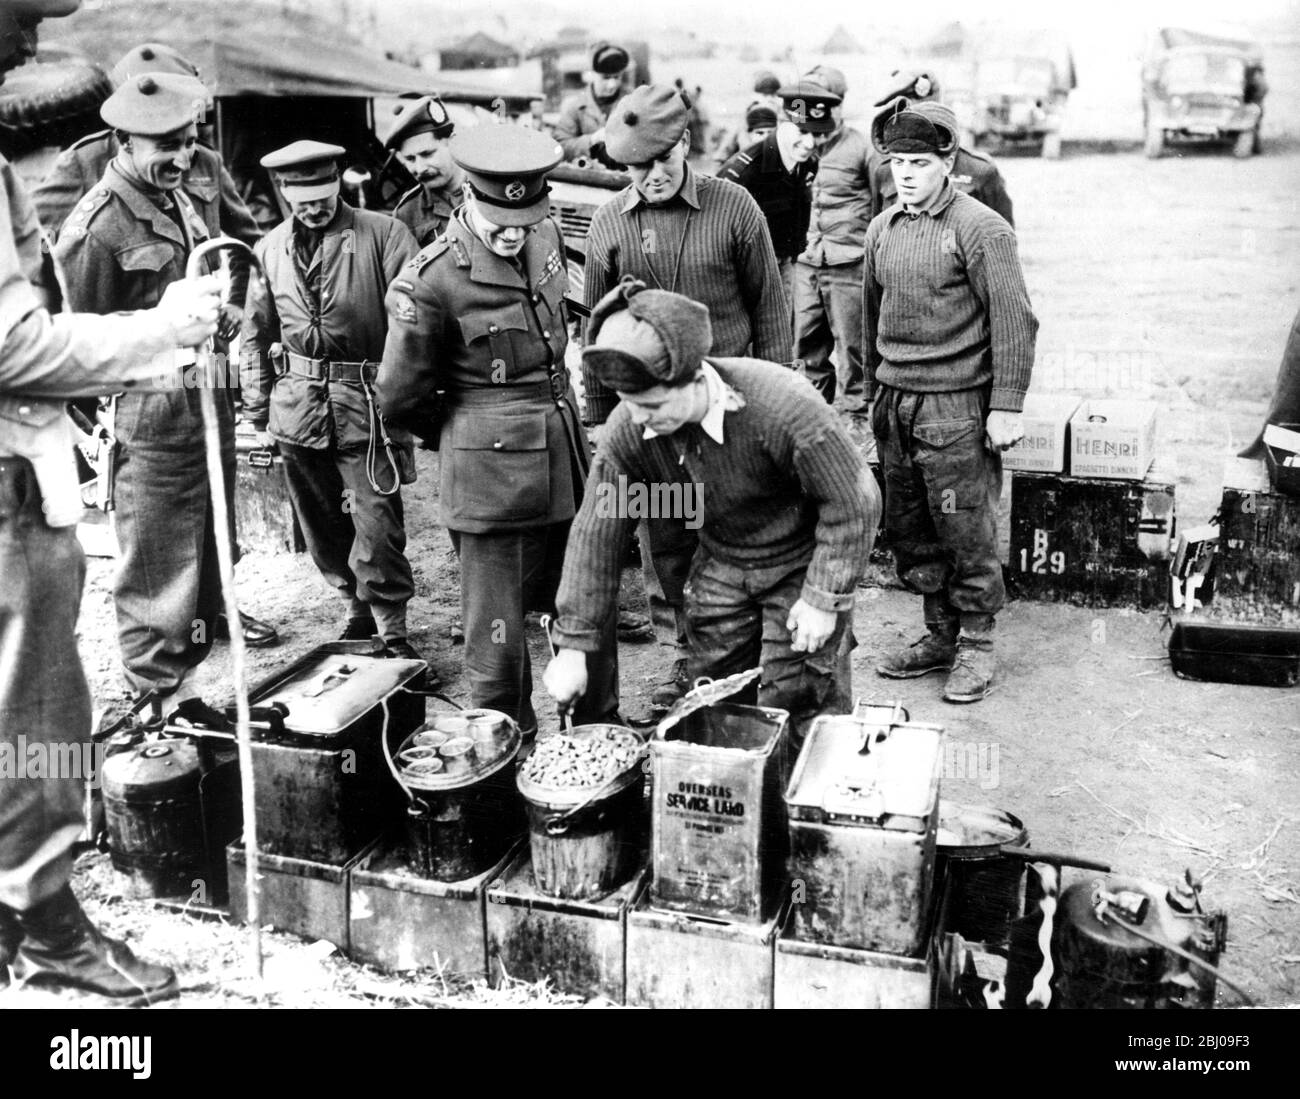 Le général Robertson inspecte la maison de cuisine , alors que les troupes britanniques se préparent à un Noël en première ligne en Corée . - 22 décembre 1950 Banque D'Images